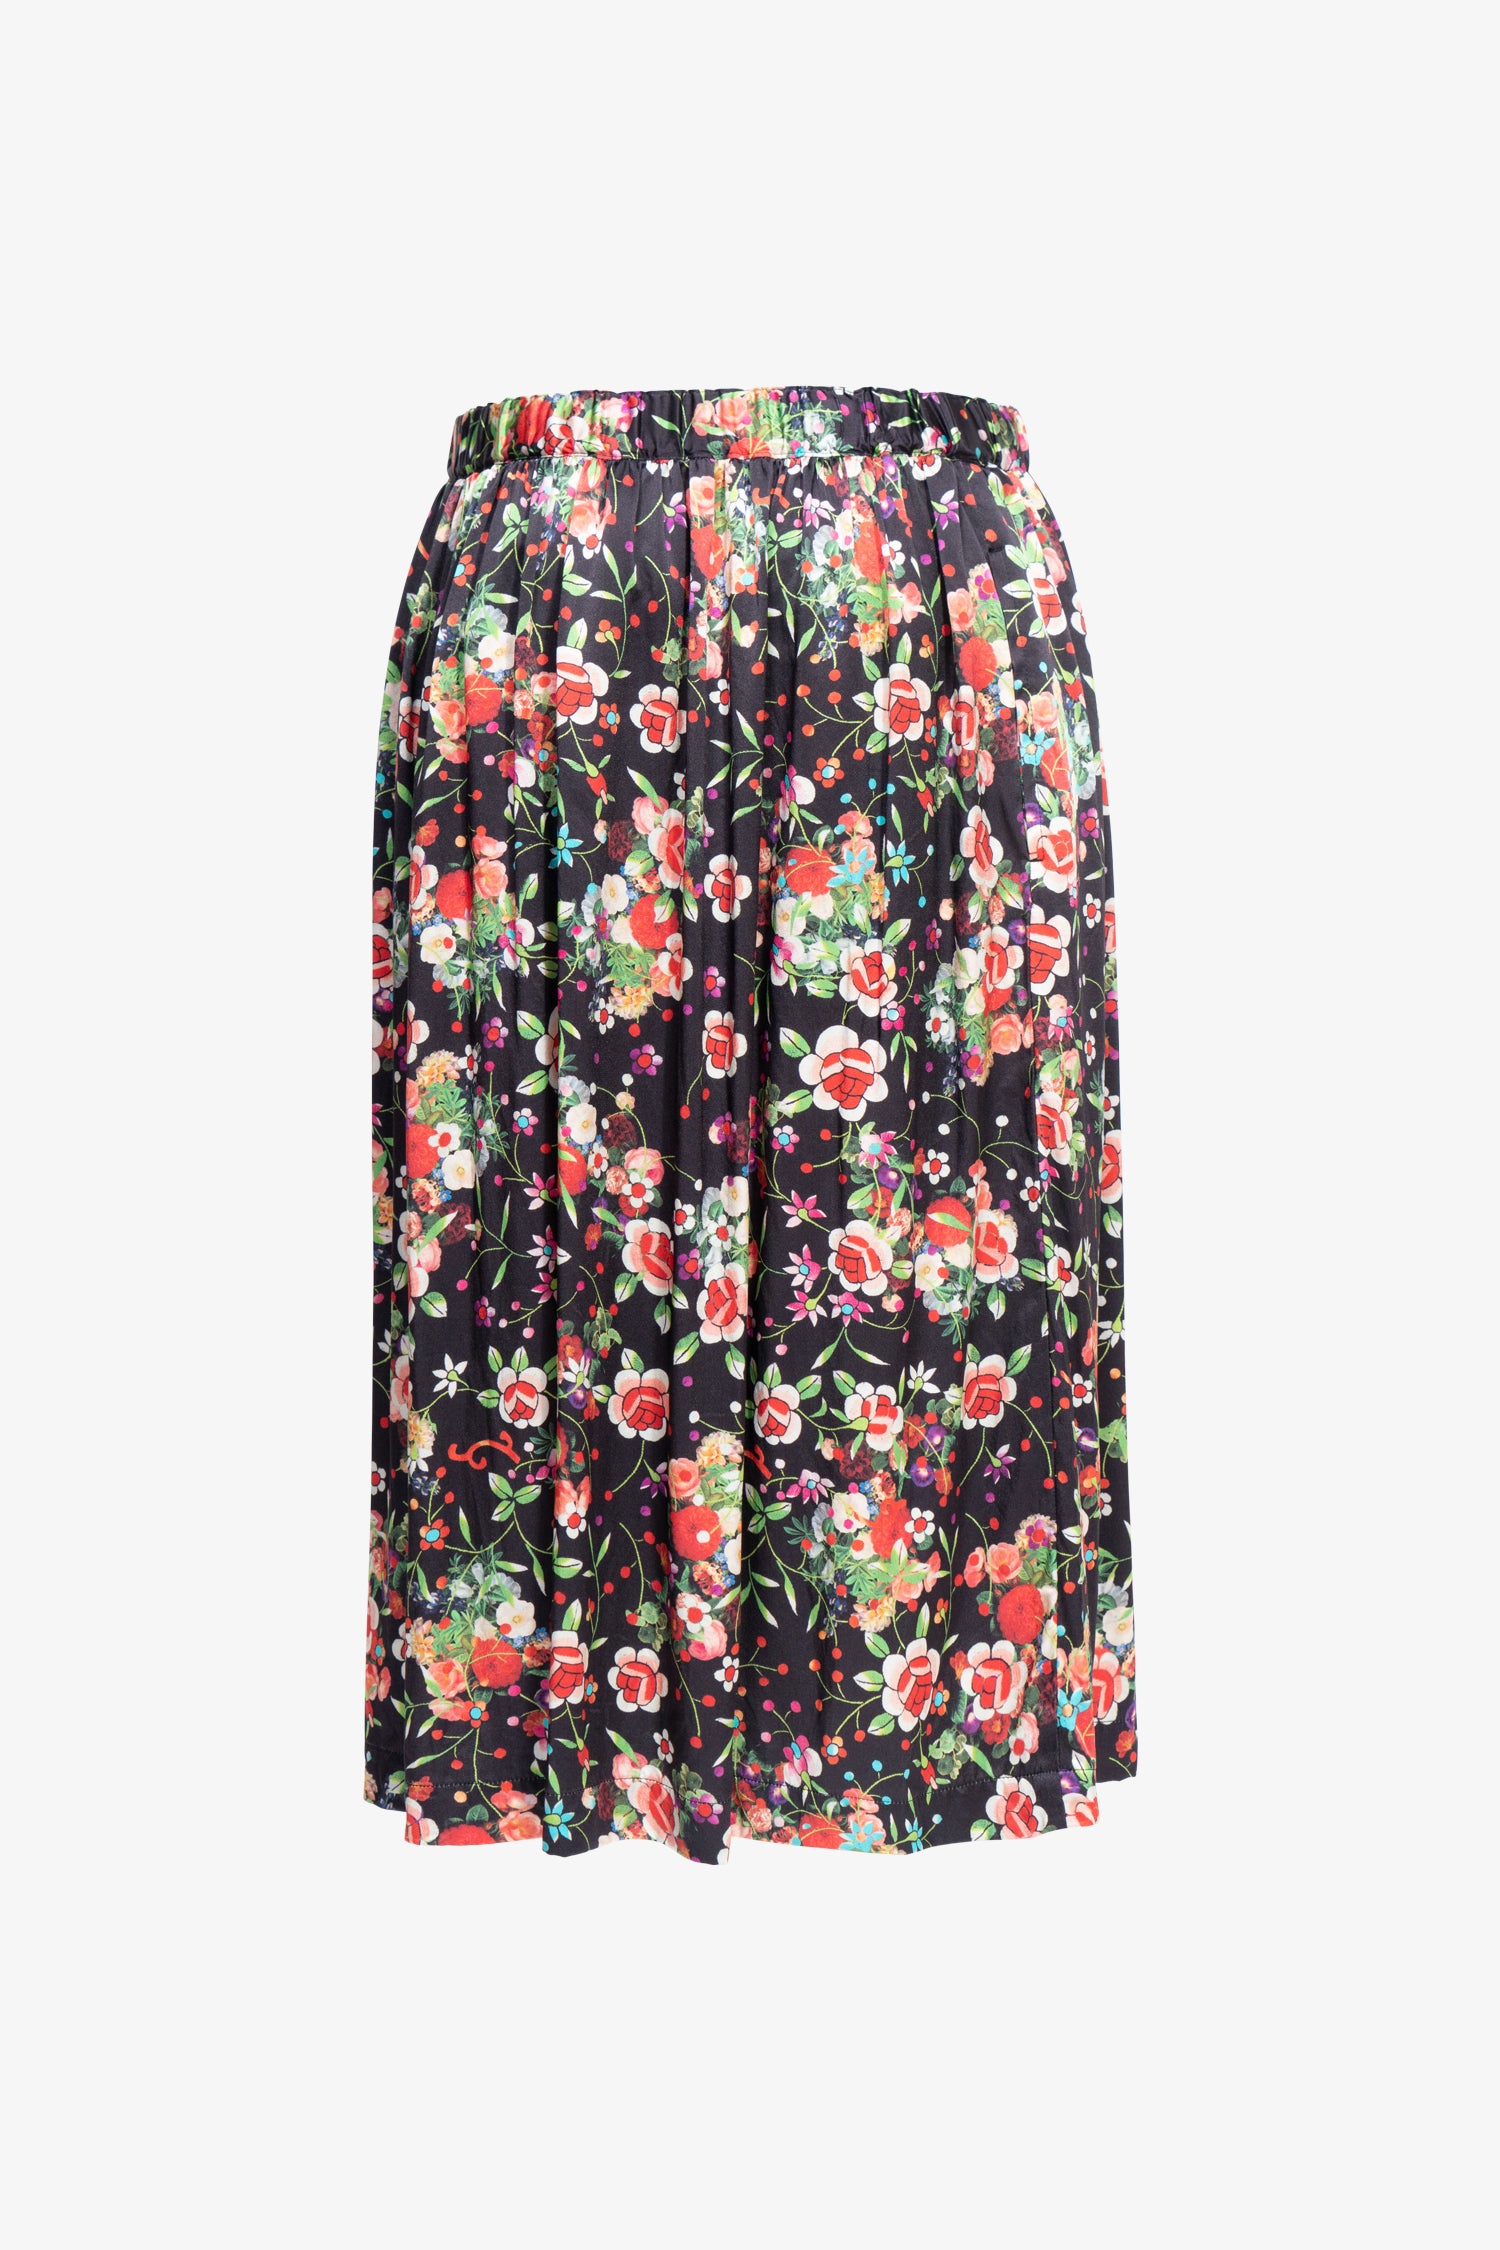 Selectshop FRAME - COMME DES GARÇONS COMME DES GARÇONS Floral Silk Skirt Bottoms Dubai